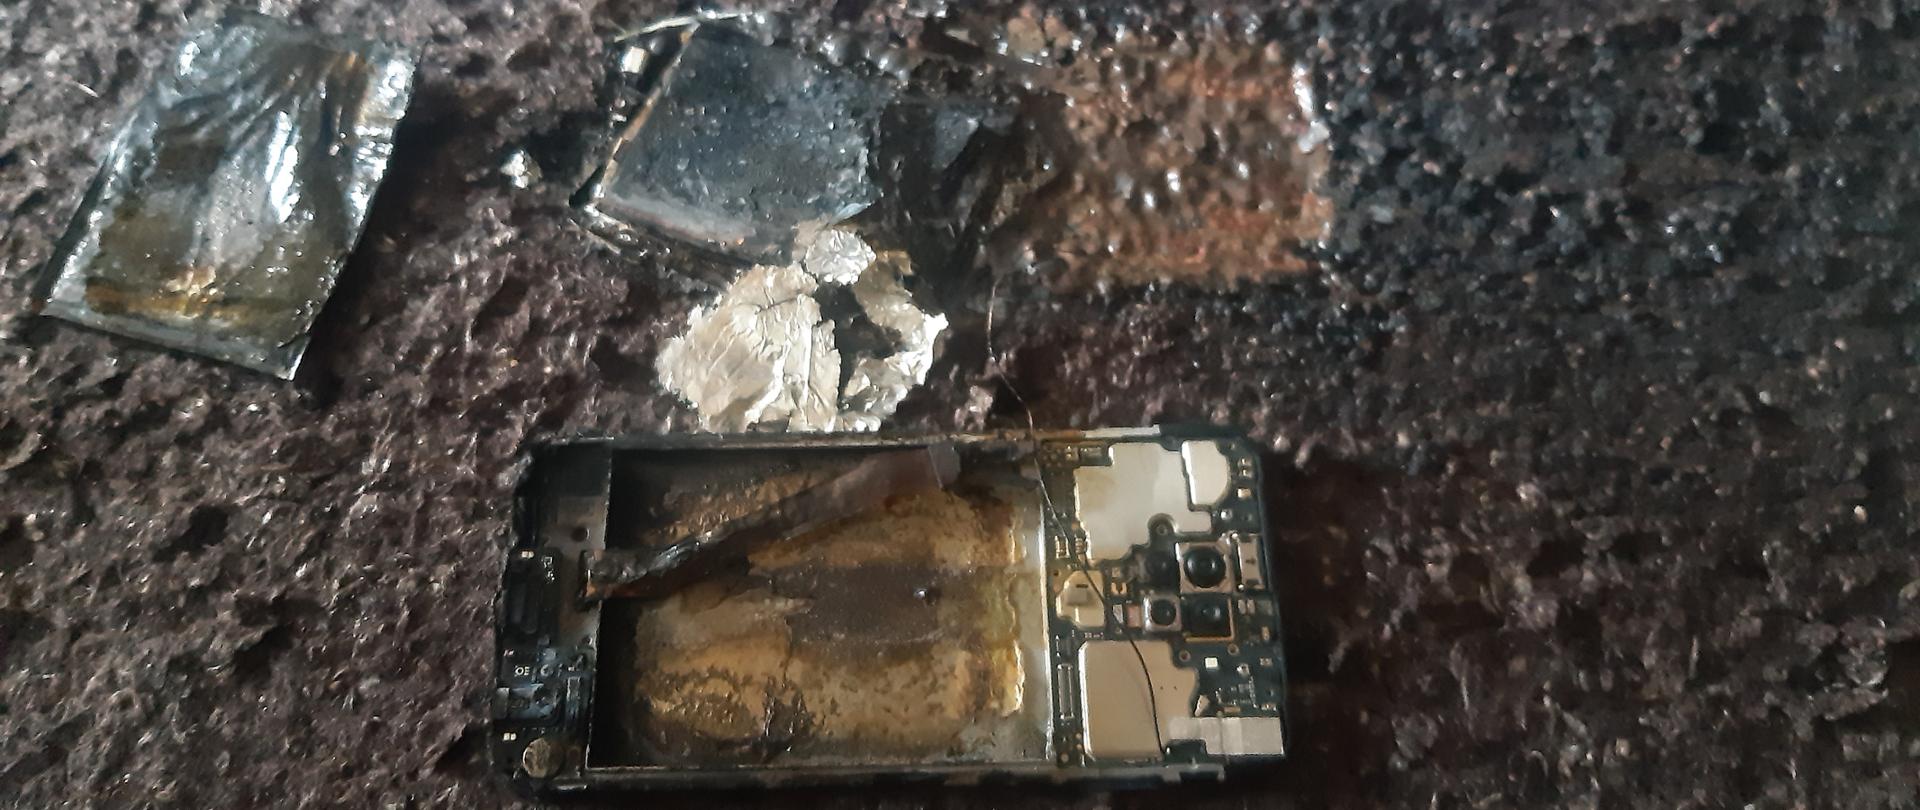 Zdjęcie przedstawia spalone elementy telefonu komórkowego leżące na nadpalonym dywanie